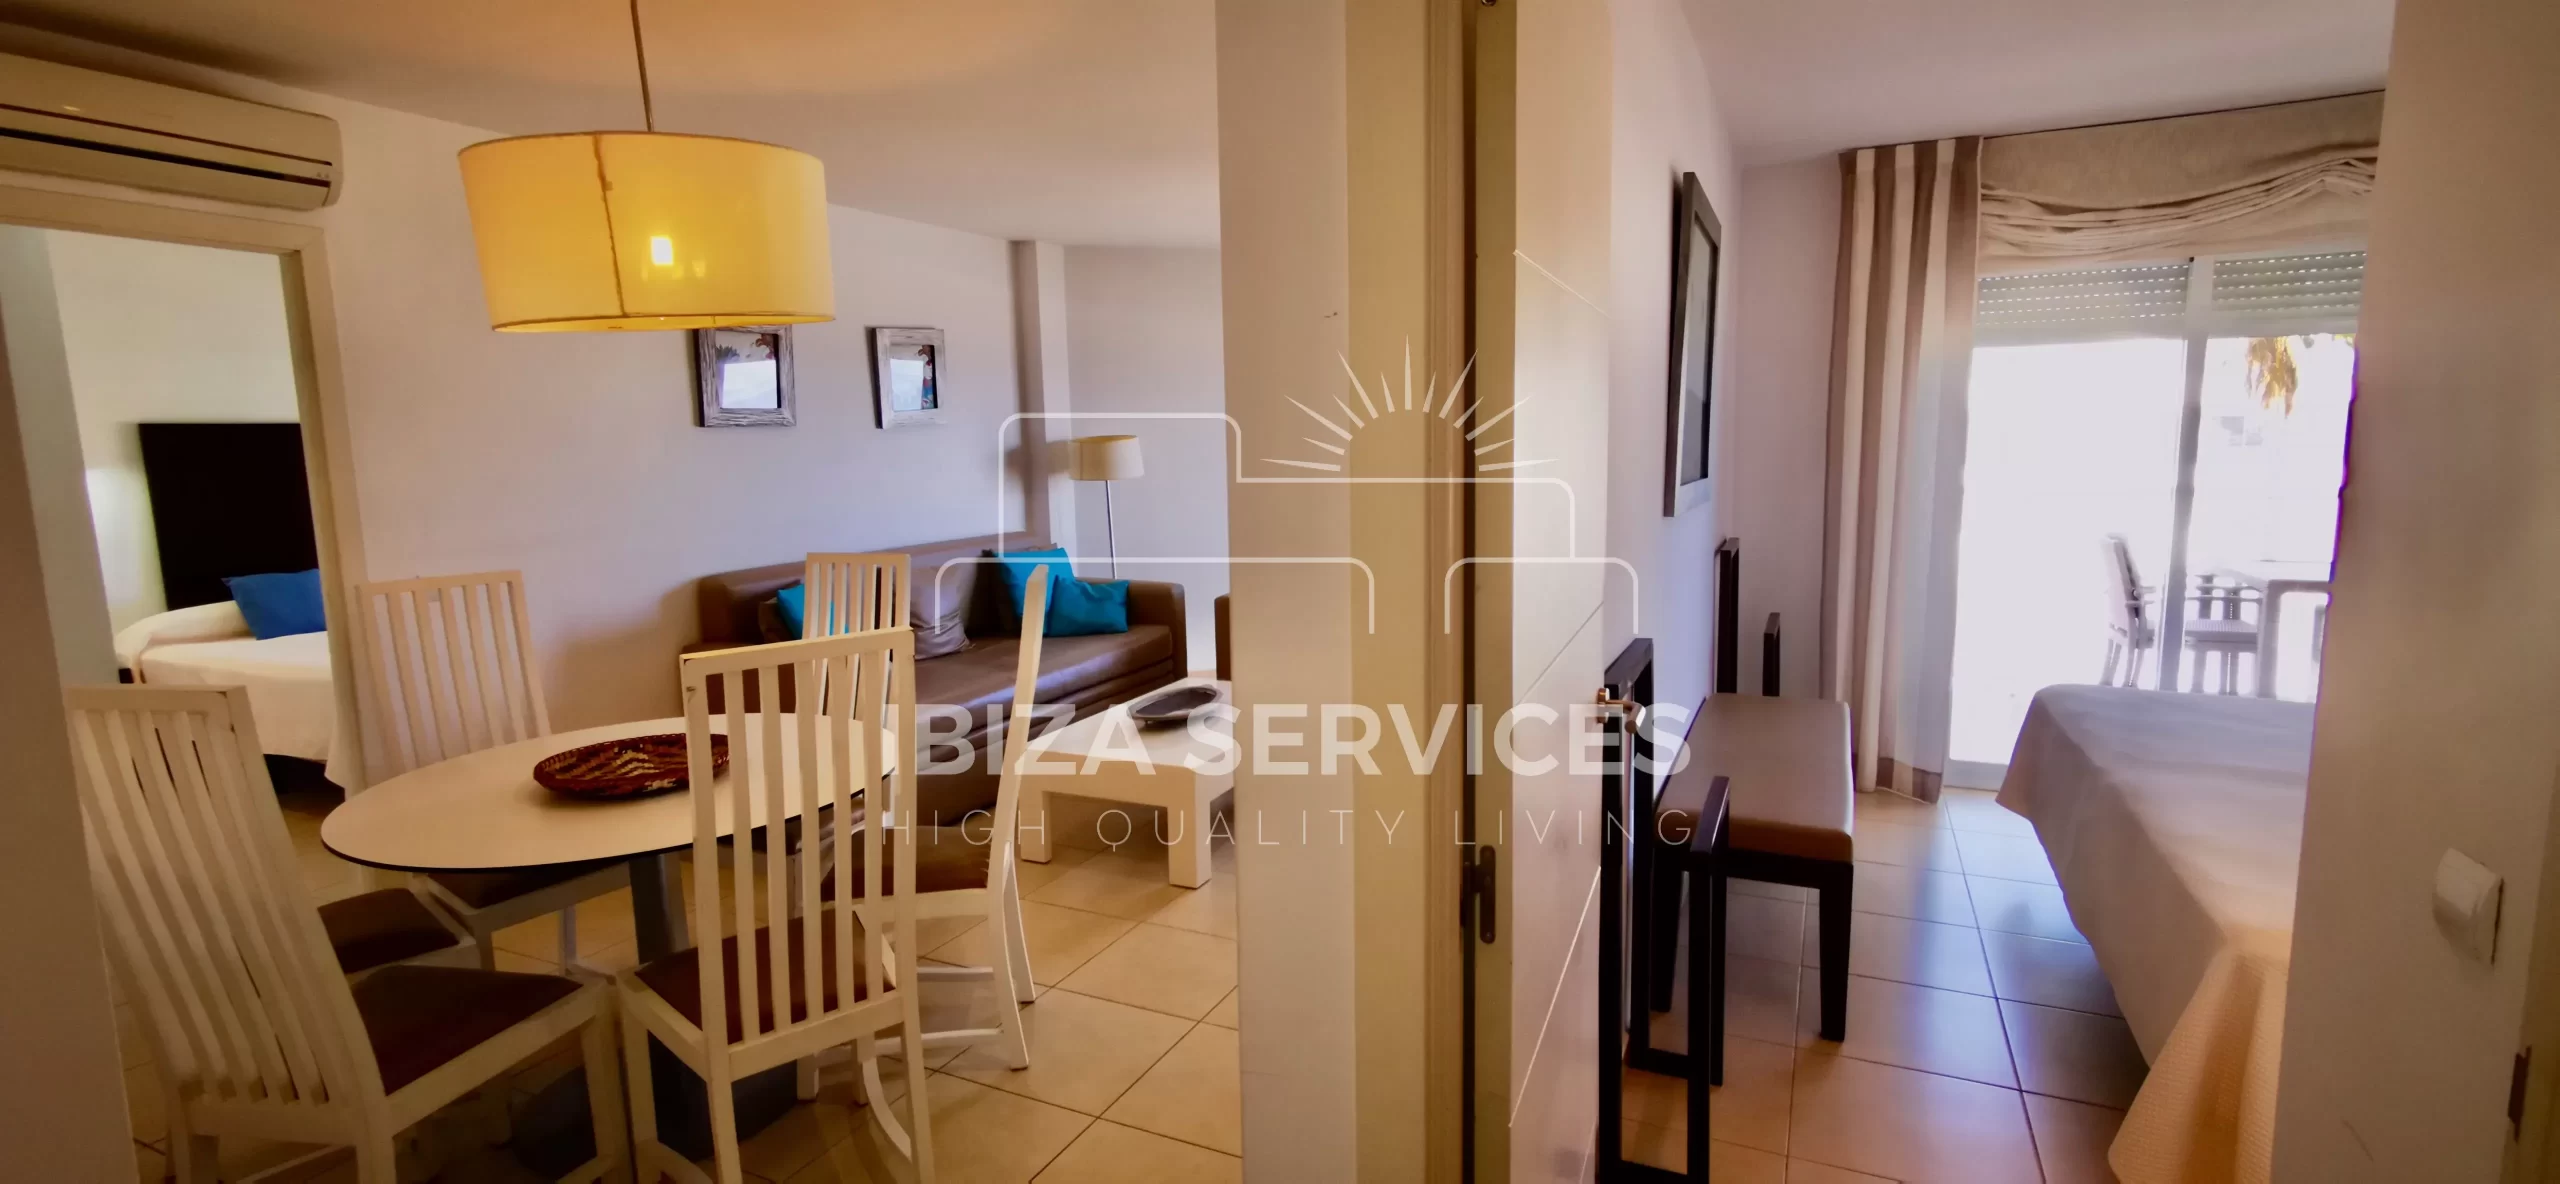 Großzügige Wohnung mit Meerblick zum Verkauf an der Westküste Ibizas